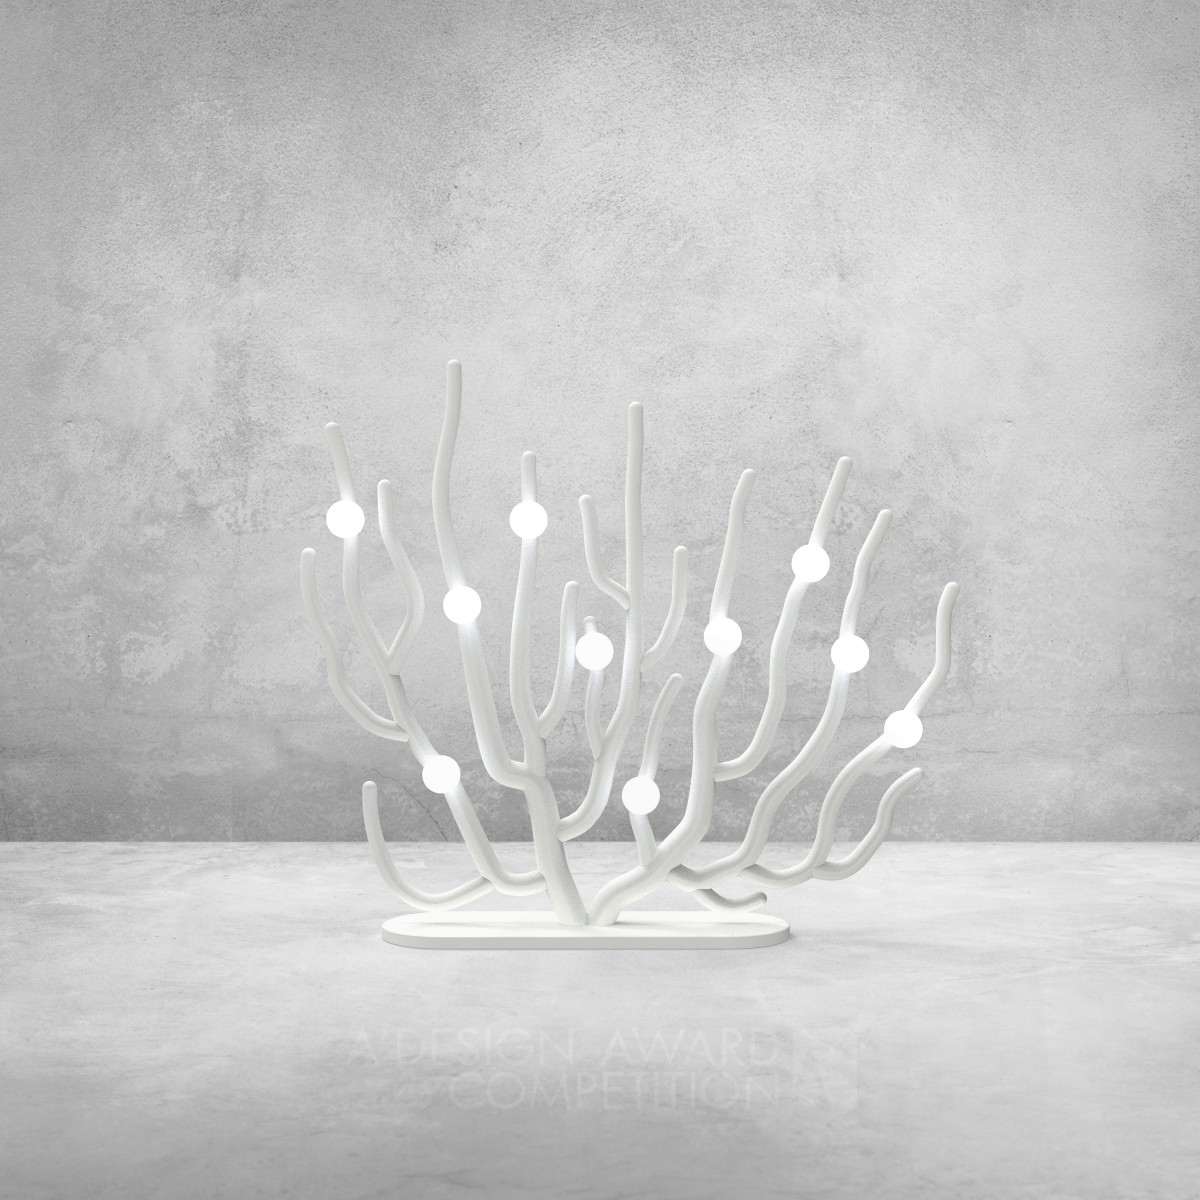 灵感源于珊瑚白化的独特灯具设计